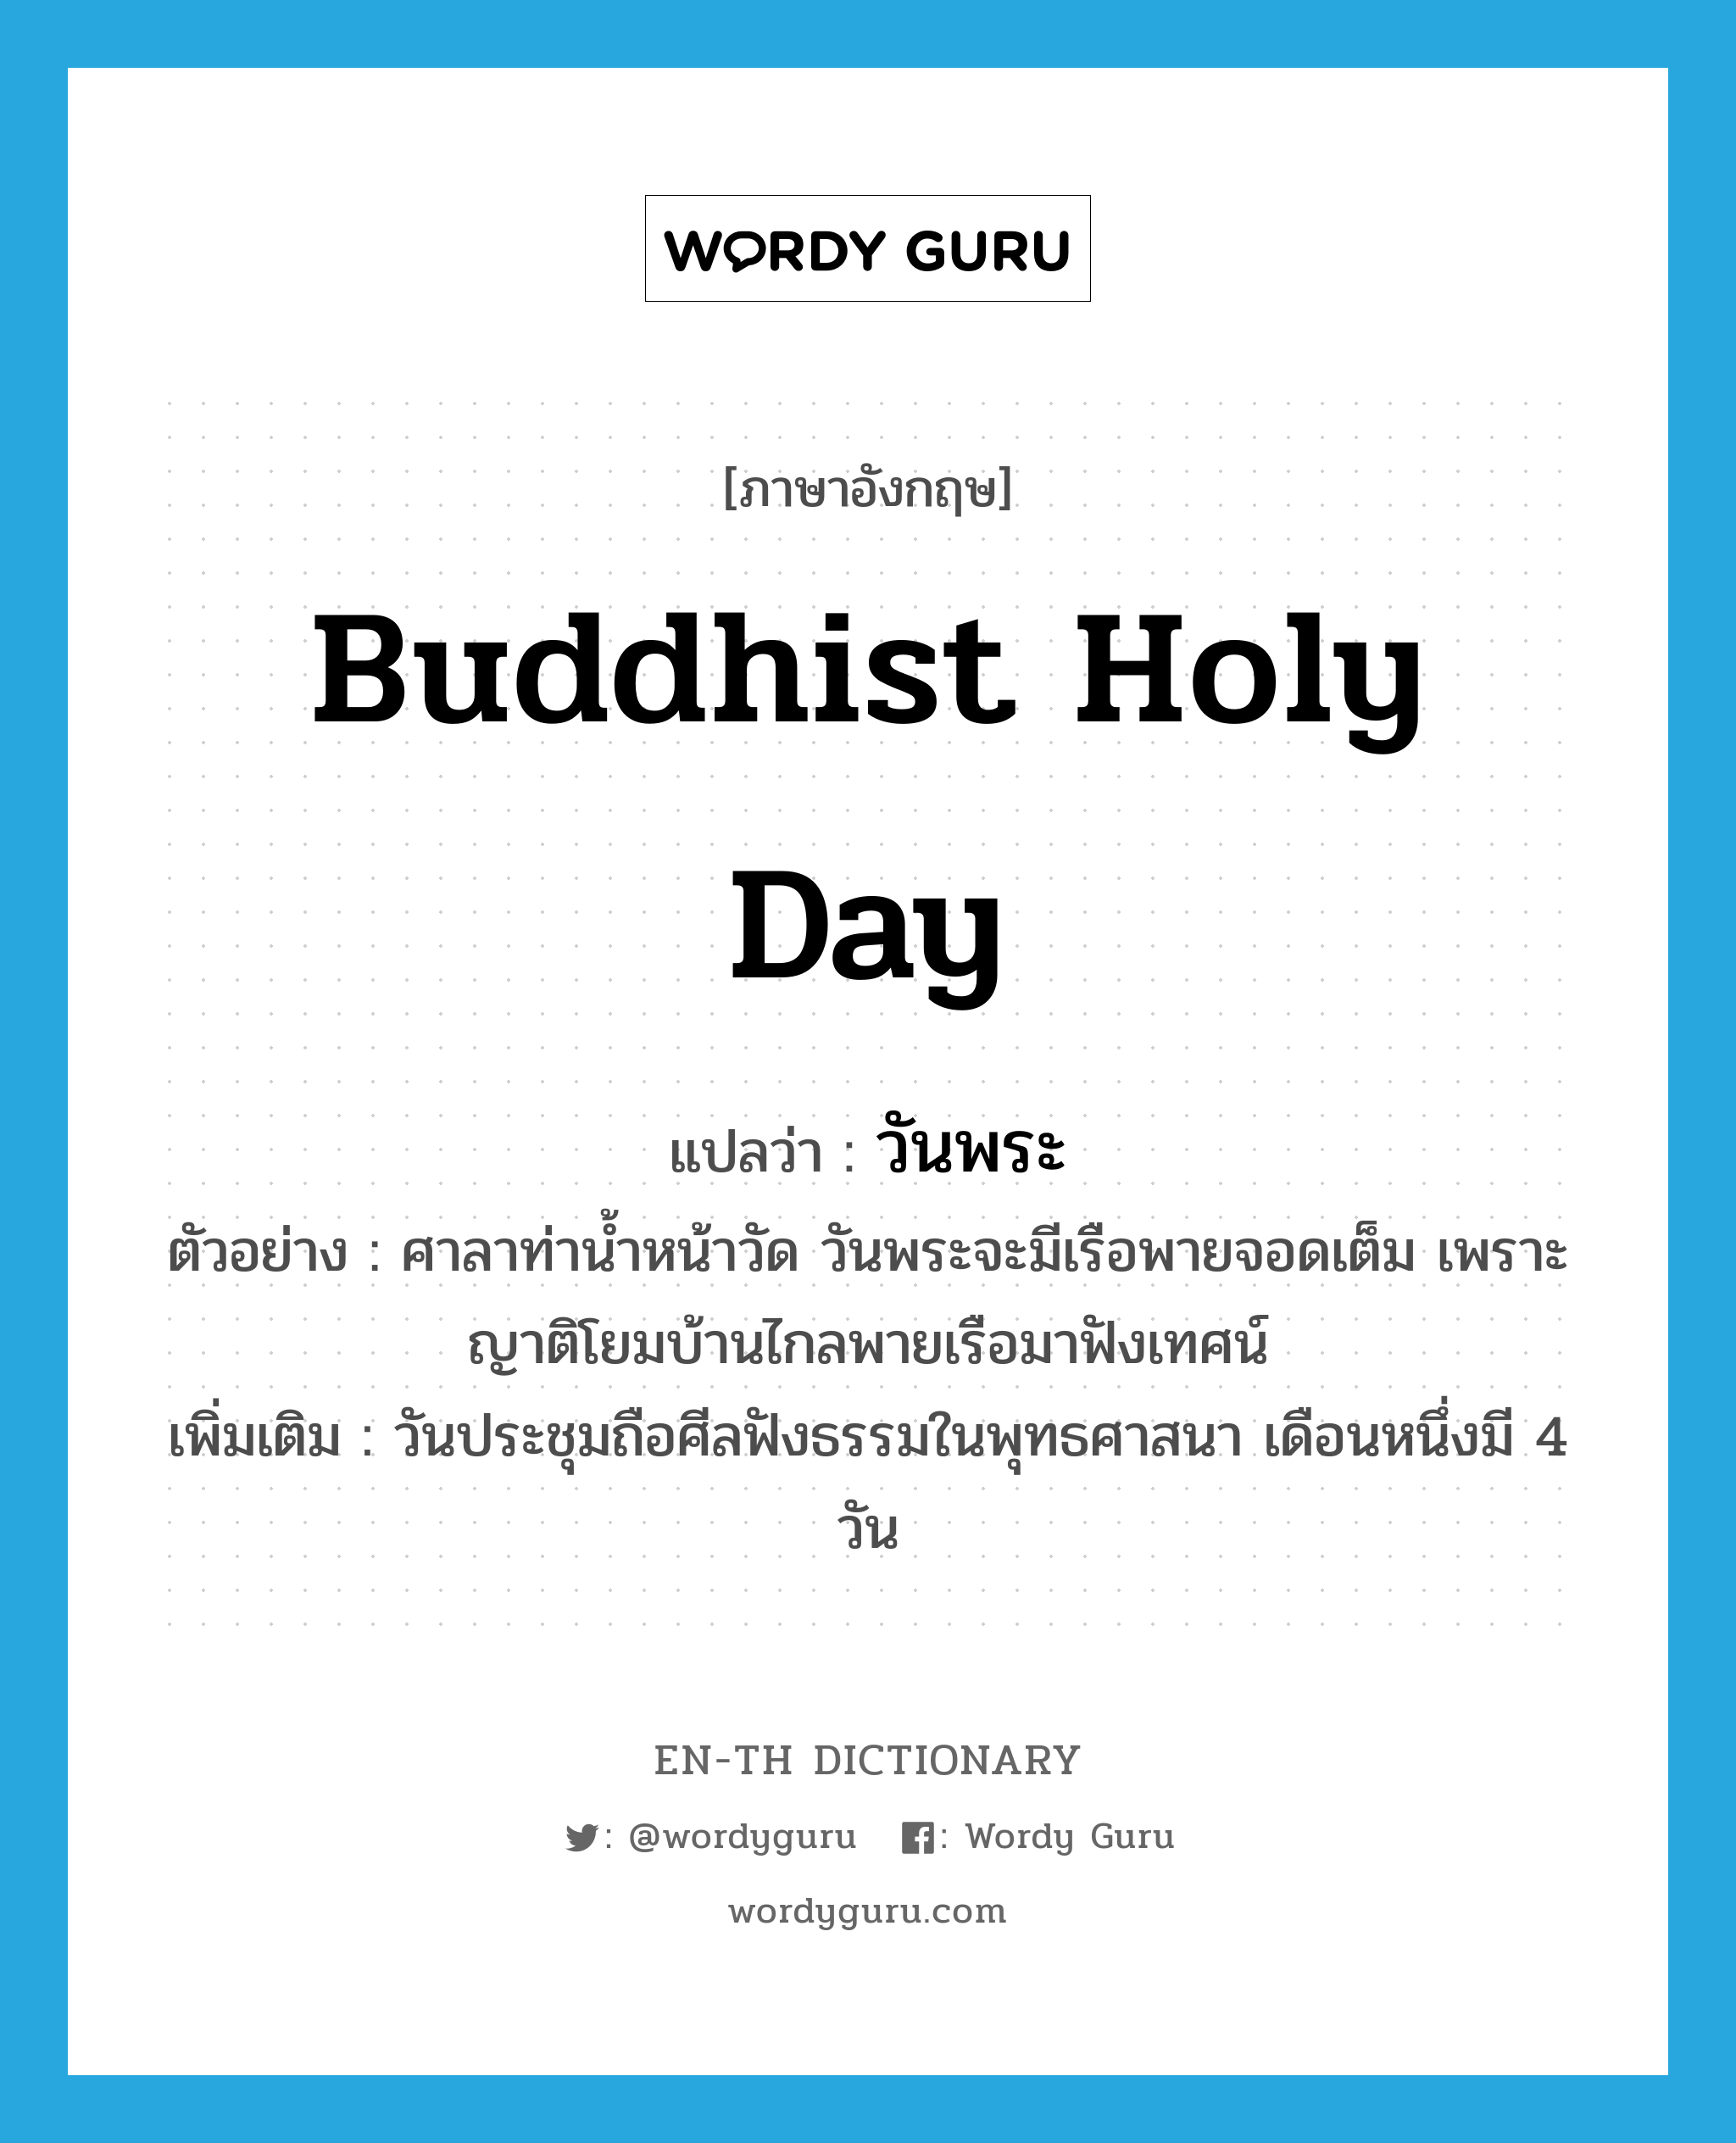 วันพระ ภาษาอังกฤษ?, คำศัพท์ภาษาอังกฤษ วันพระ แปลว่า Buddhist holy day ประเภท N ตัวอย่าง ศาลาท่าน้ำหน้าวัด วันพระจะมีเรือพายจอดเต็ม เพราะญาติโยมบ้านไกลพายเรือมาฟังเทศน์ เพิ่มเติม วันประชุมถือศีลฟังธรรมในพุทธศาสนา เดือนหนึ่งมี 4 วัน หมวด N